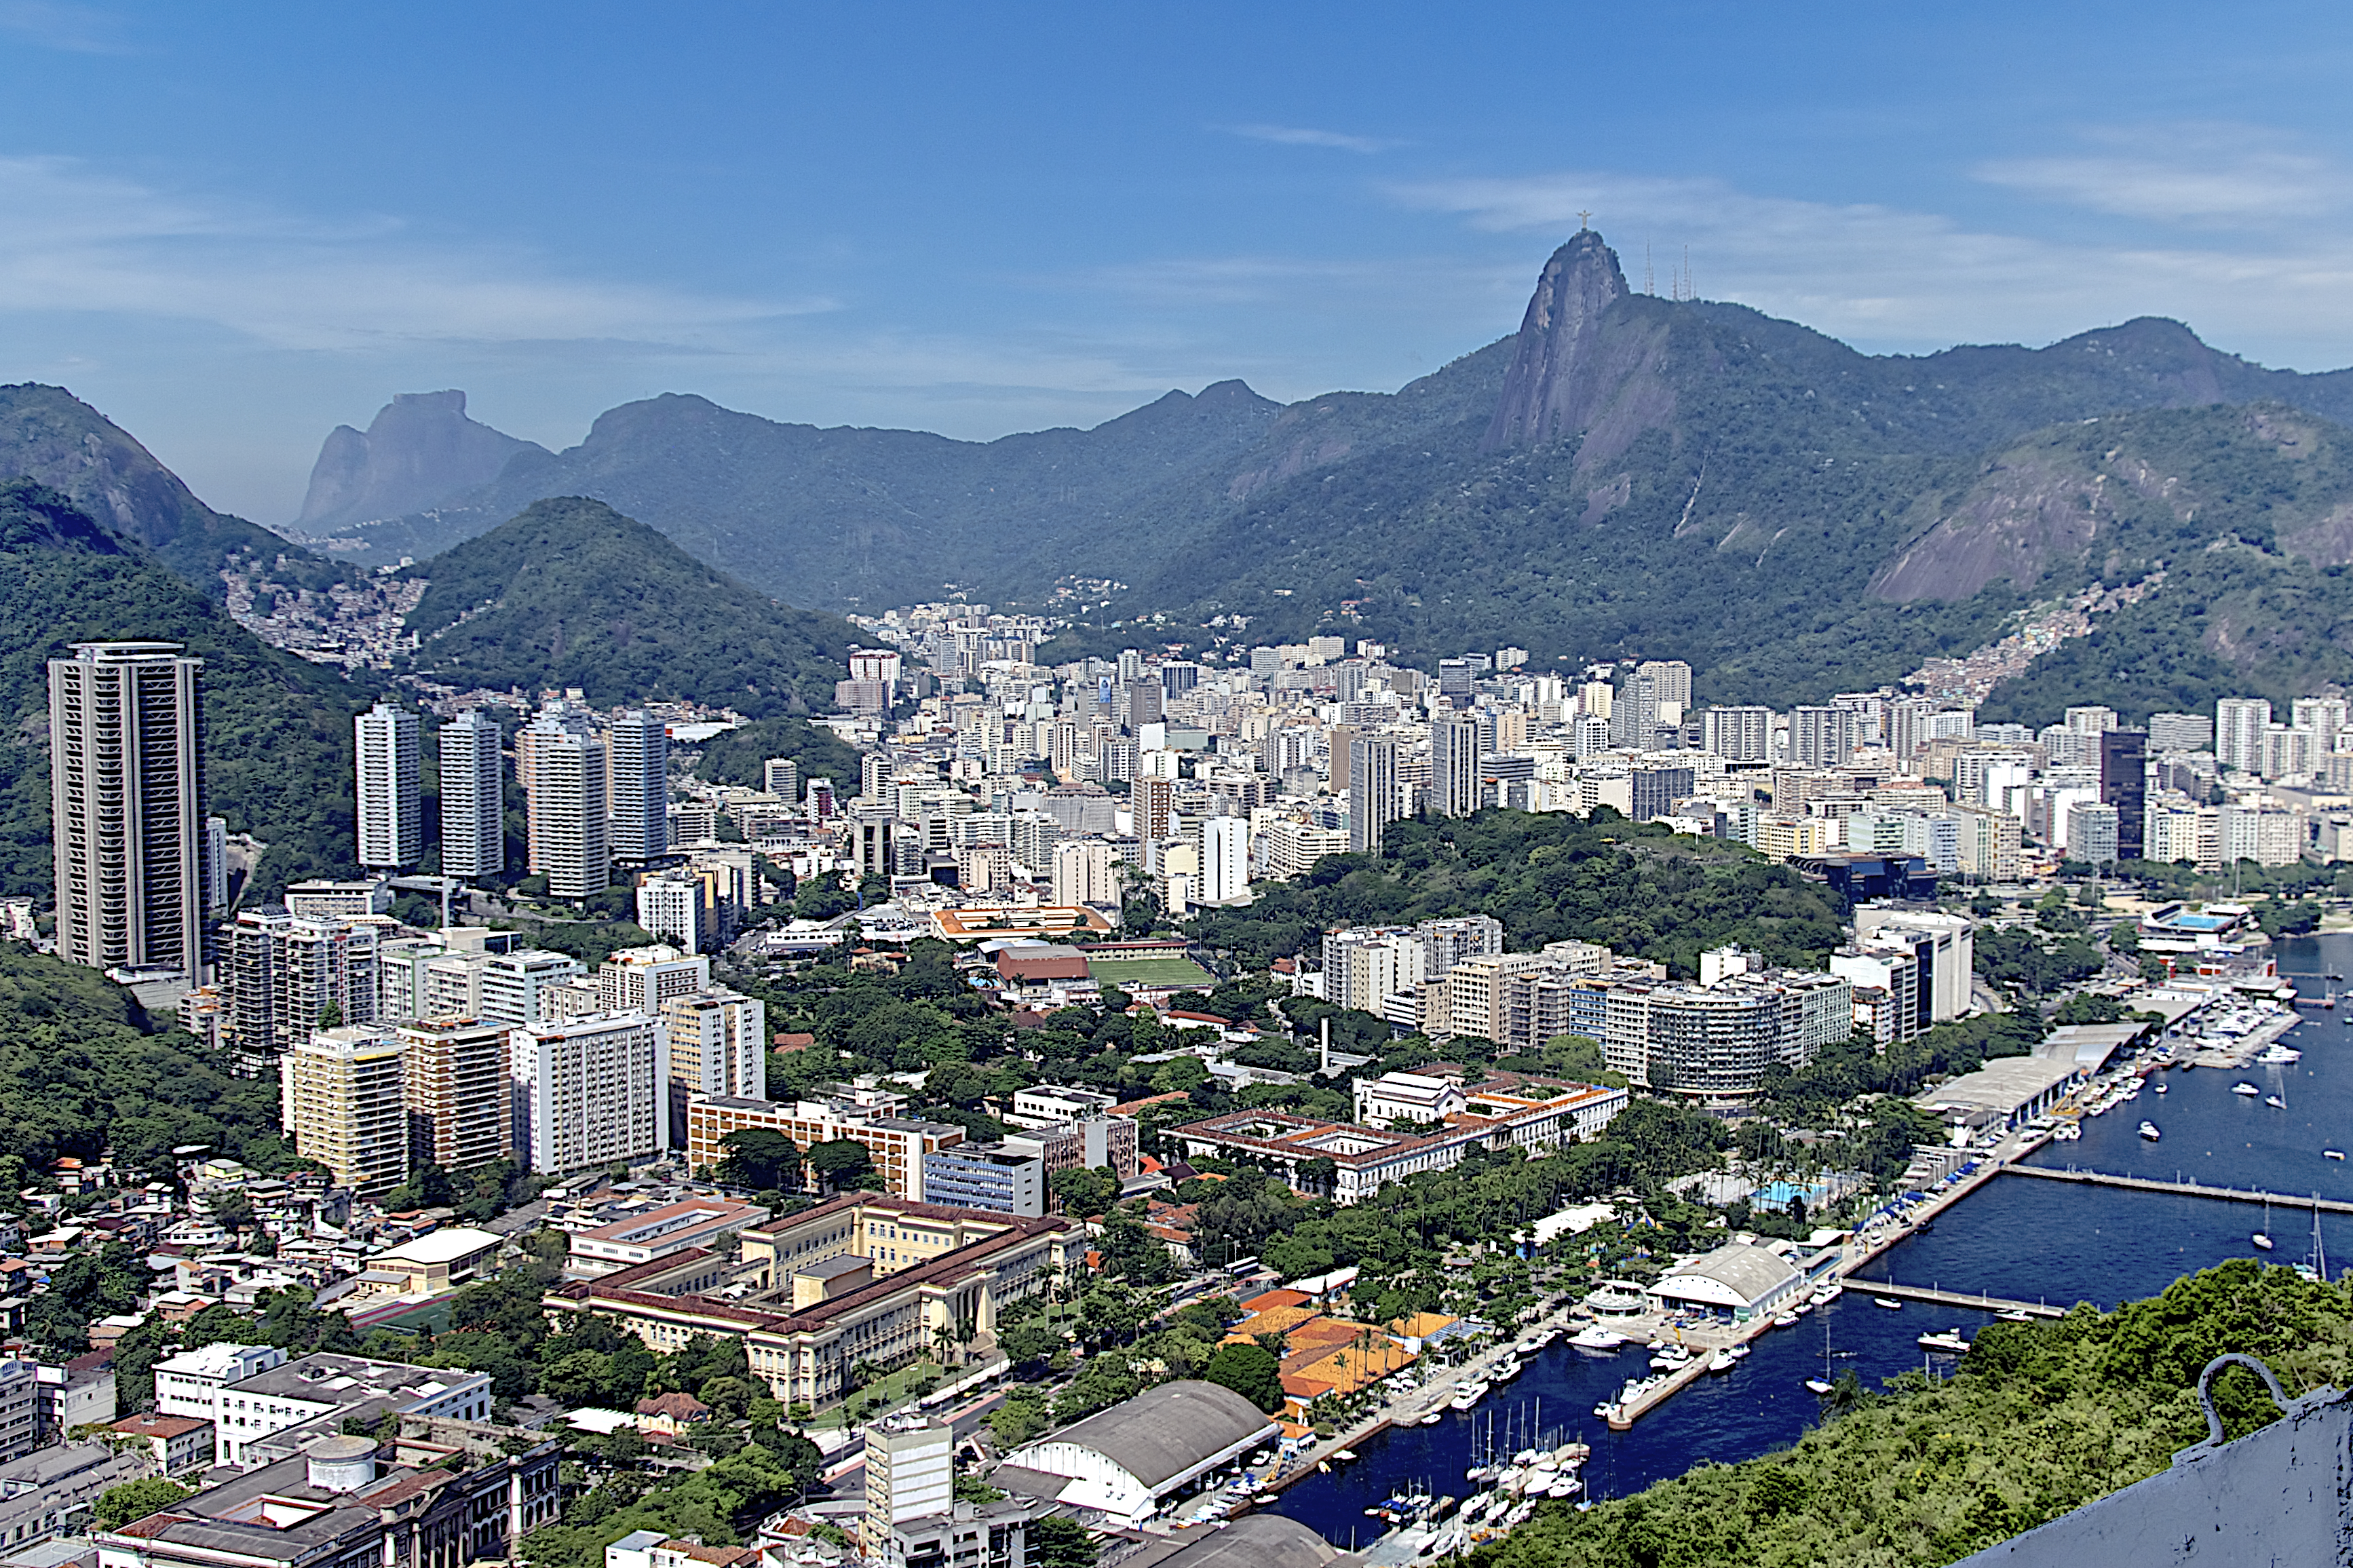 2,500+ Urca Rio De Janeiro Stock Photos, Pictures & Royalty-Free